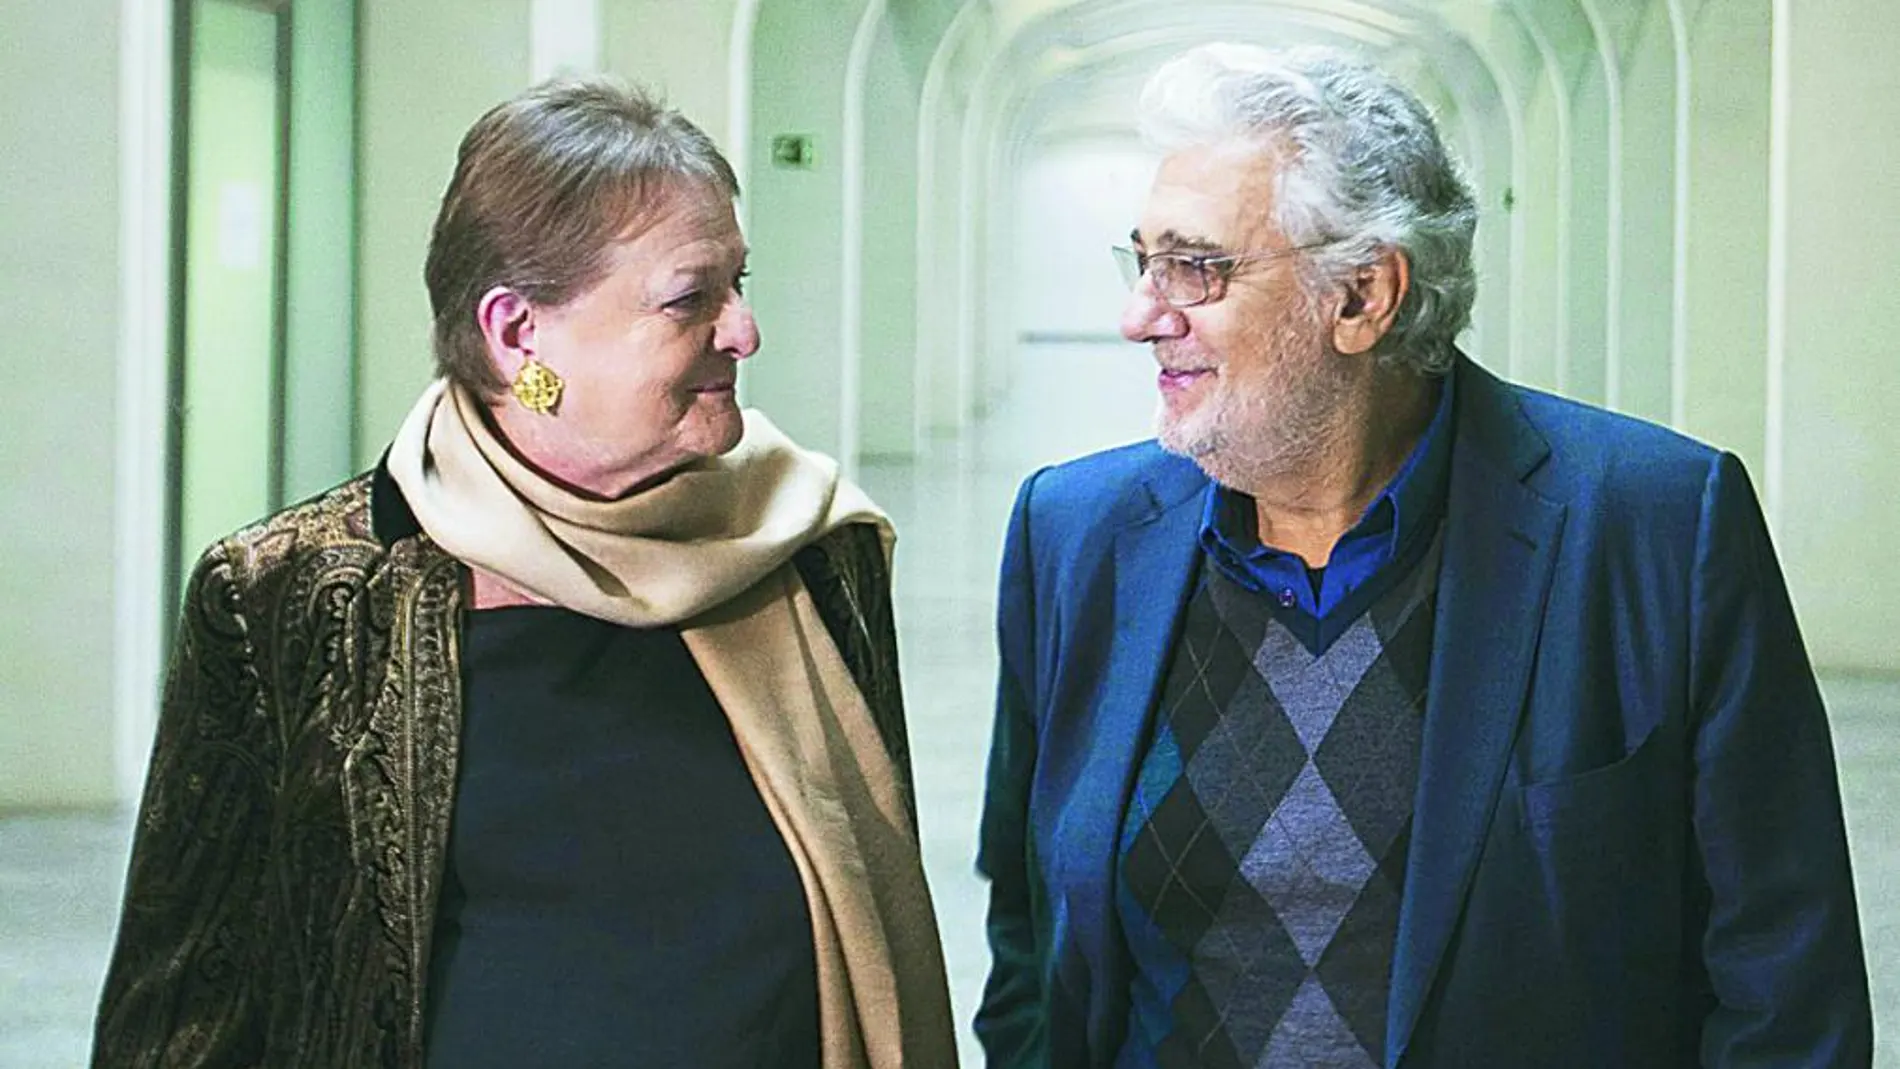 El cantante, director y gestor artístico, Plácido Domingo, junto a la intendente del Palau de les Arts, Helga Schmidt